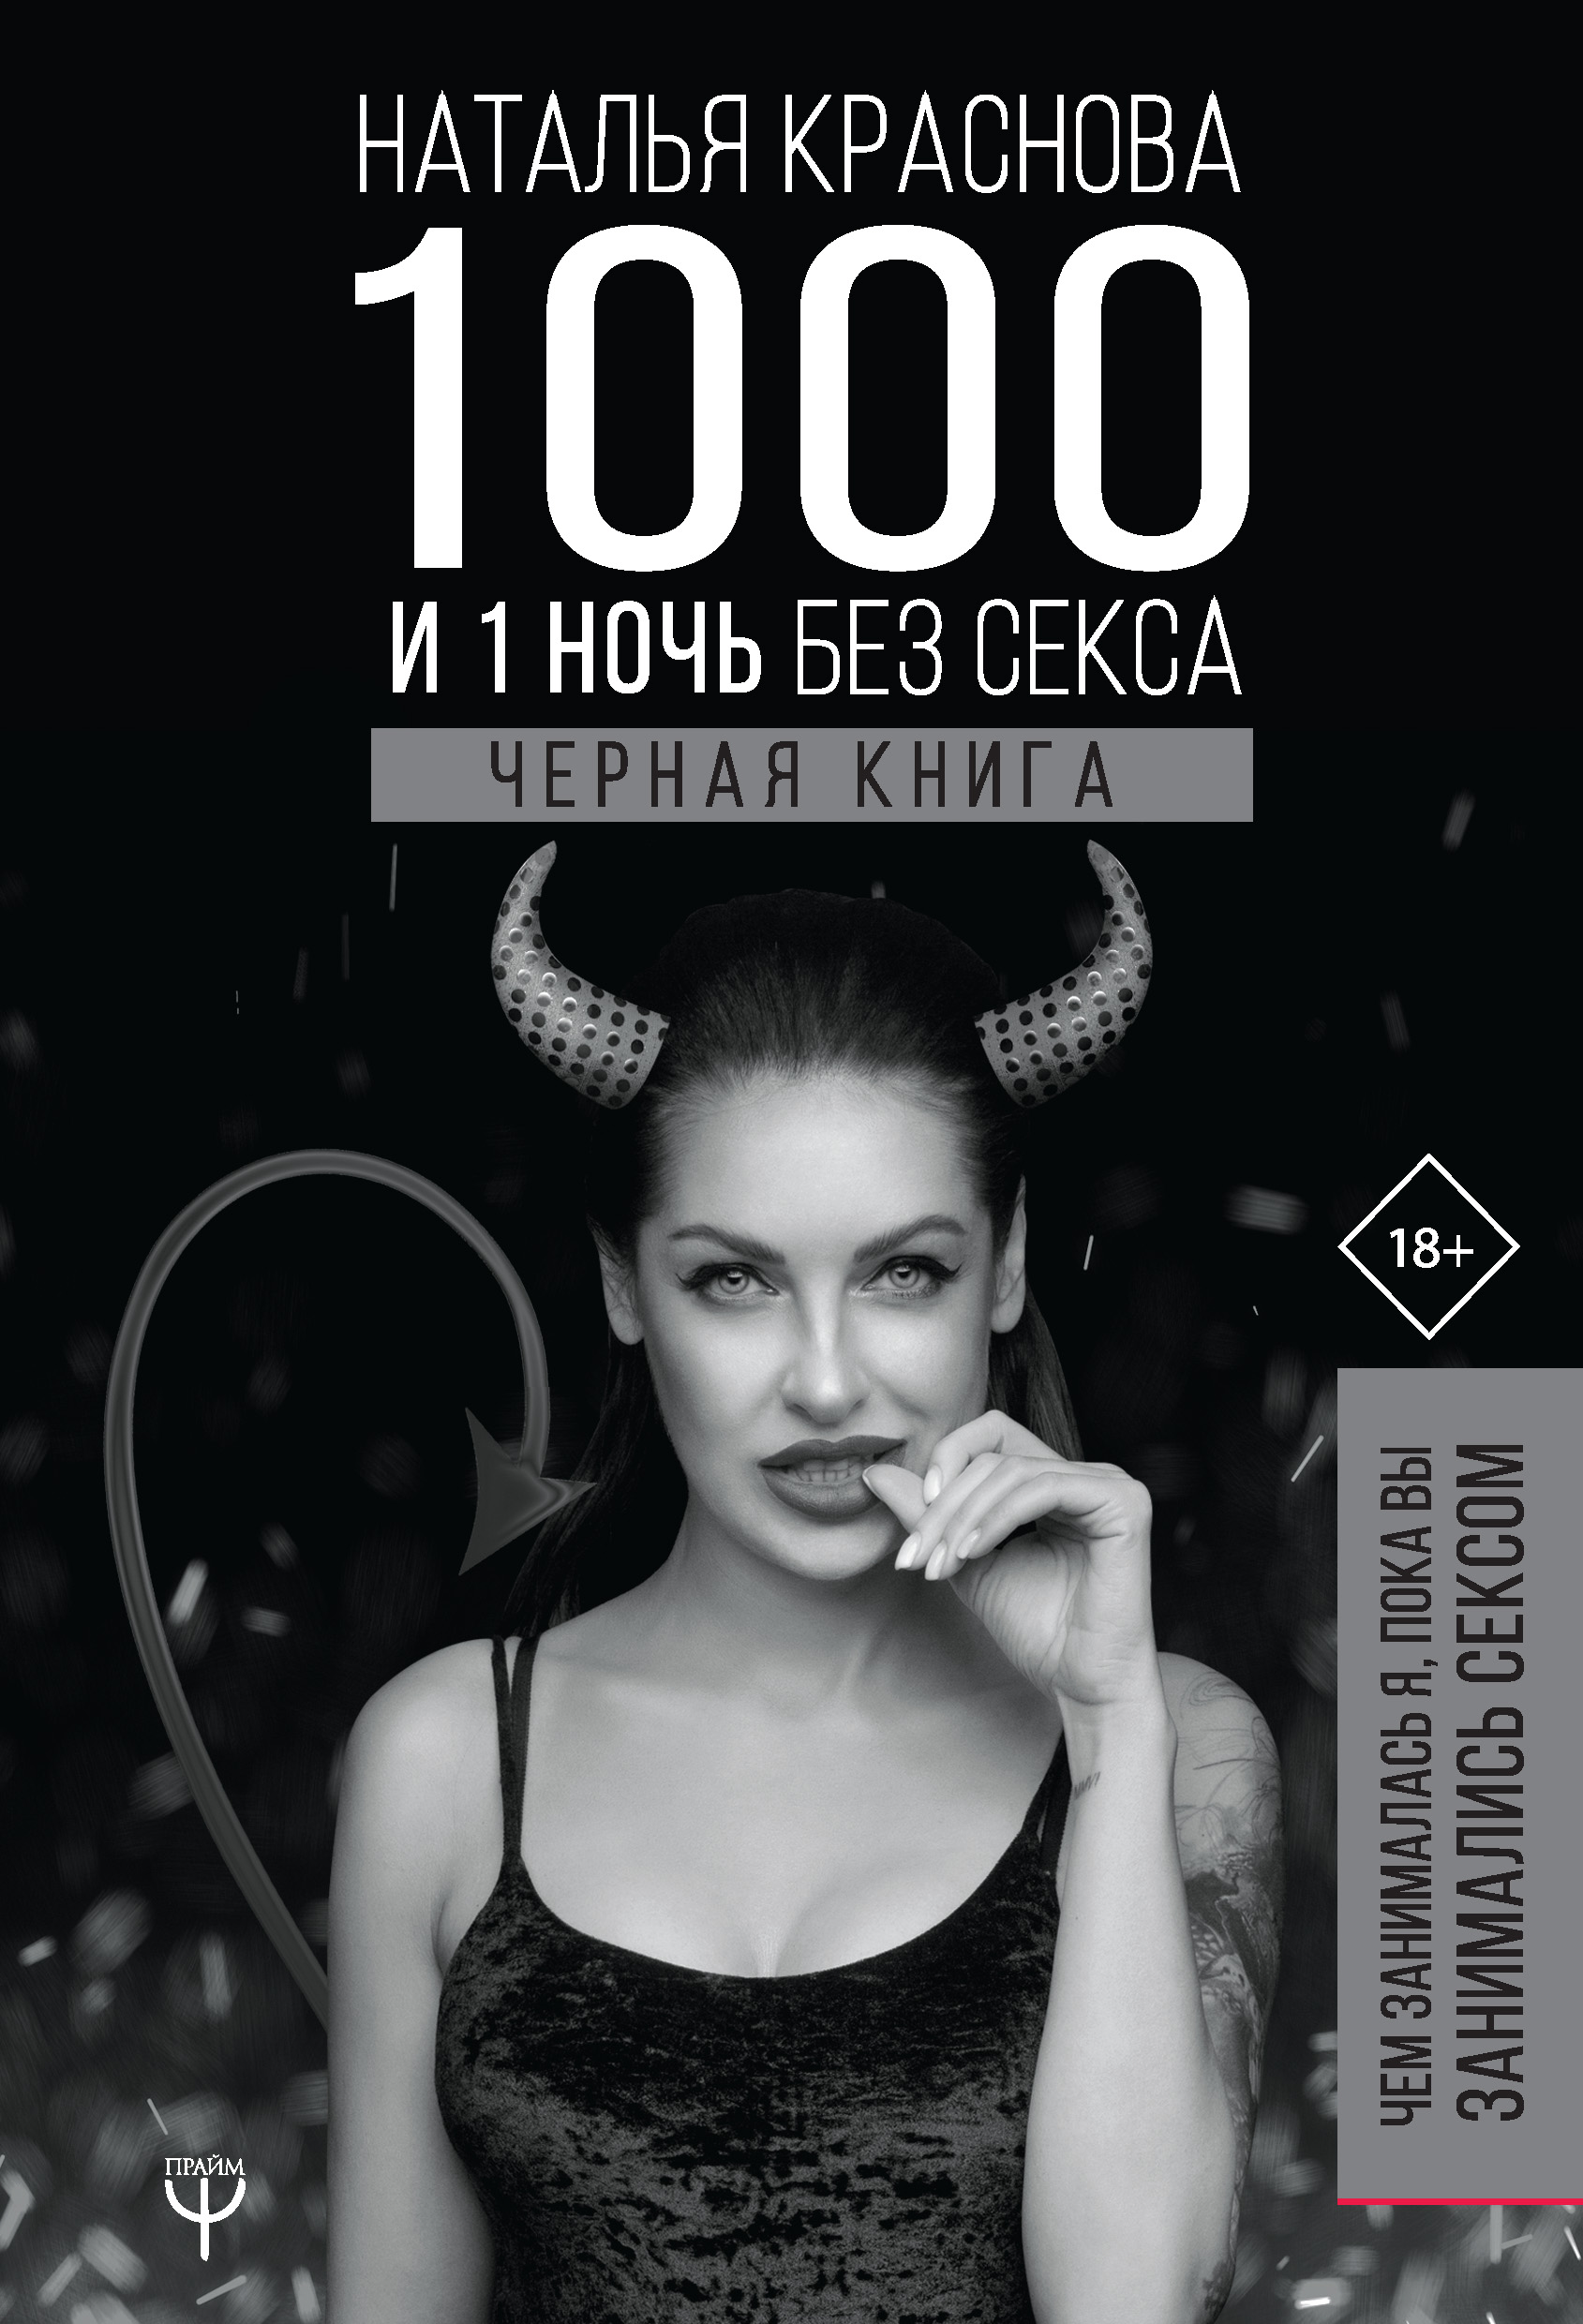 Наташа первый раз снялась в порно: порно видео на intim-top.ru